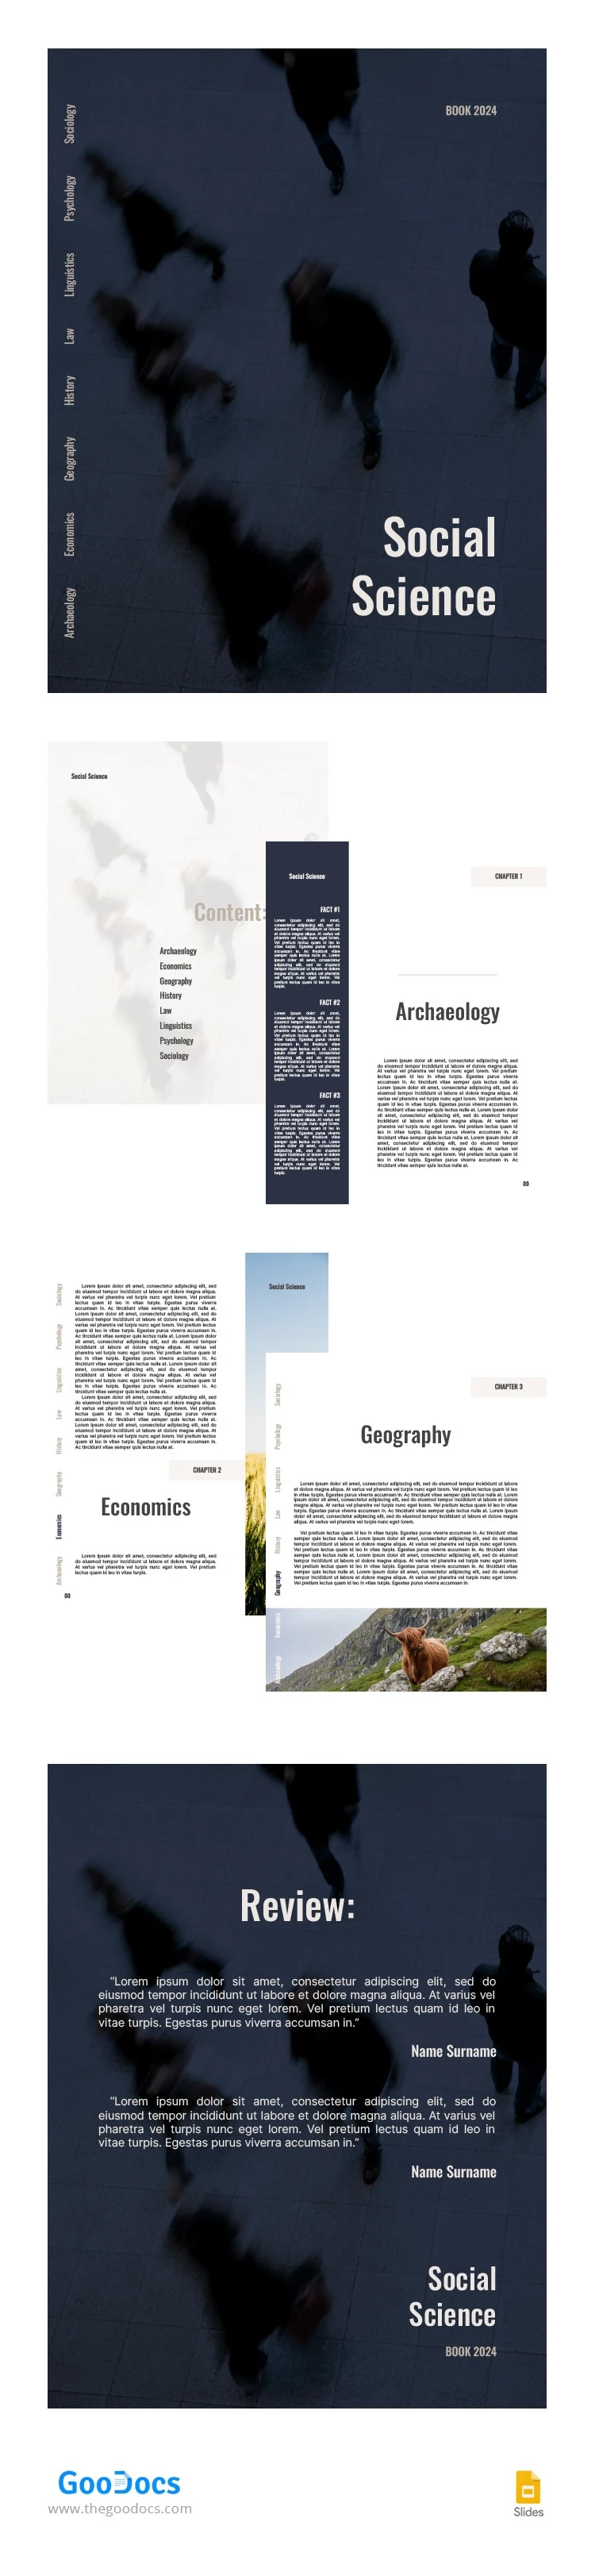 Libro de Ciencias Sociales Modernas Estructurales - free Google Docs Template - 10065923